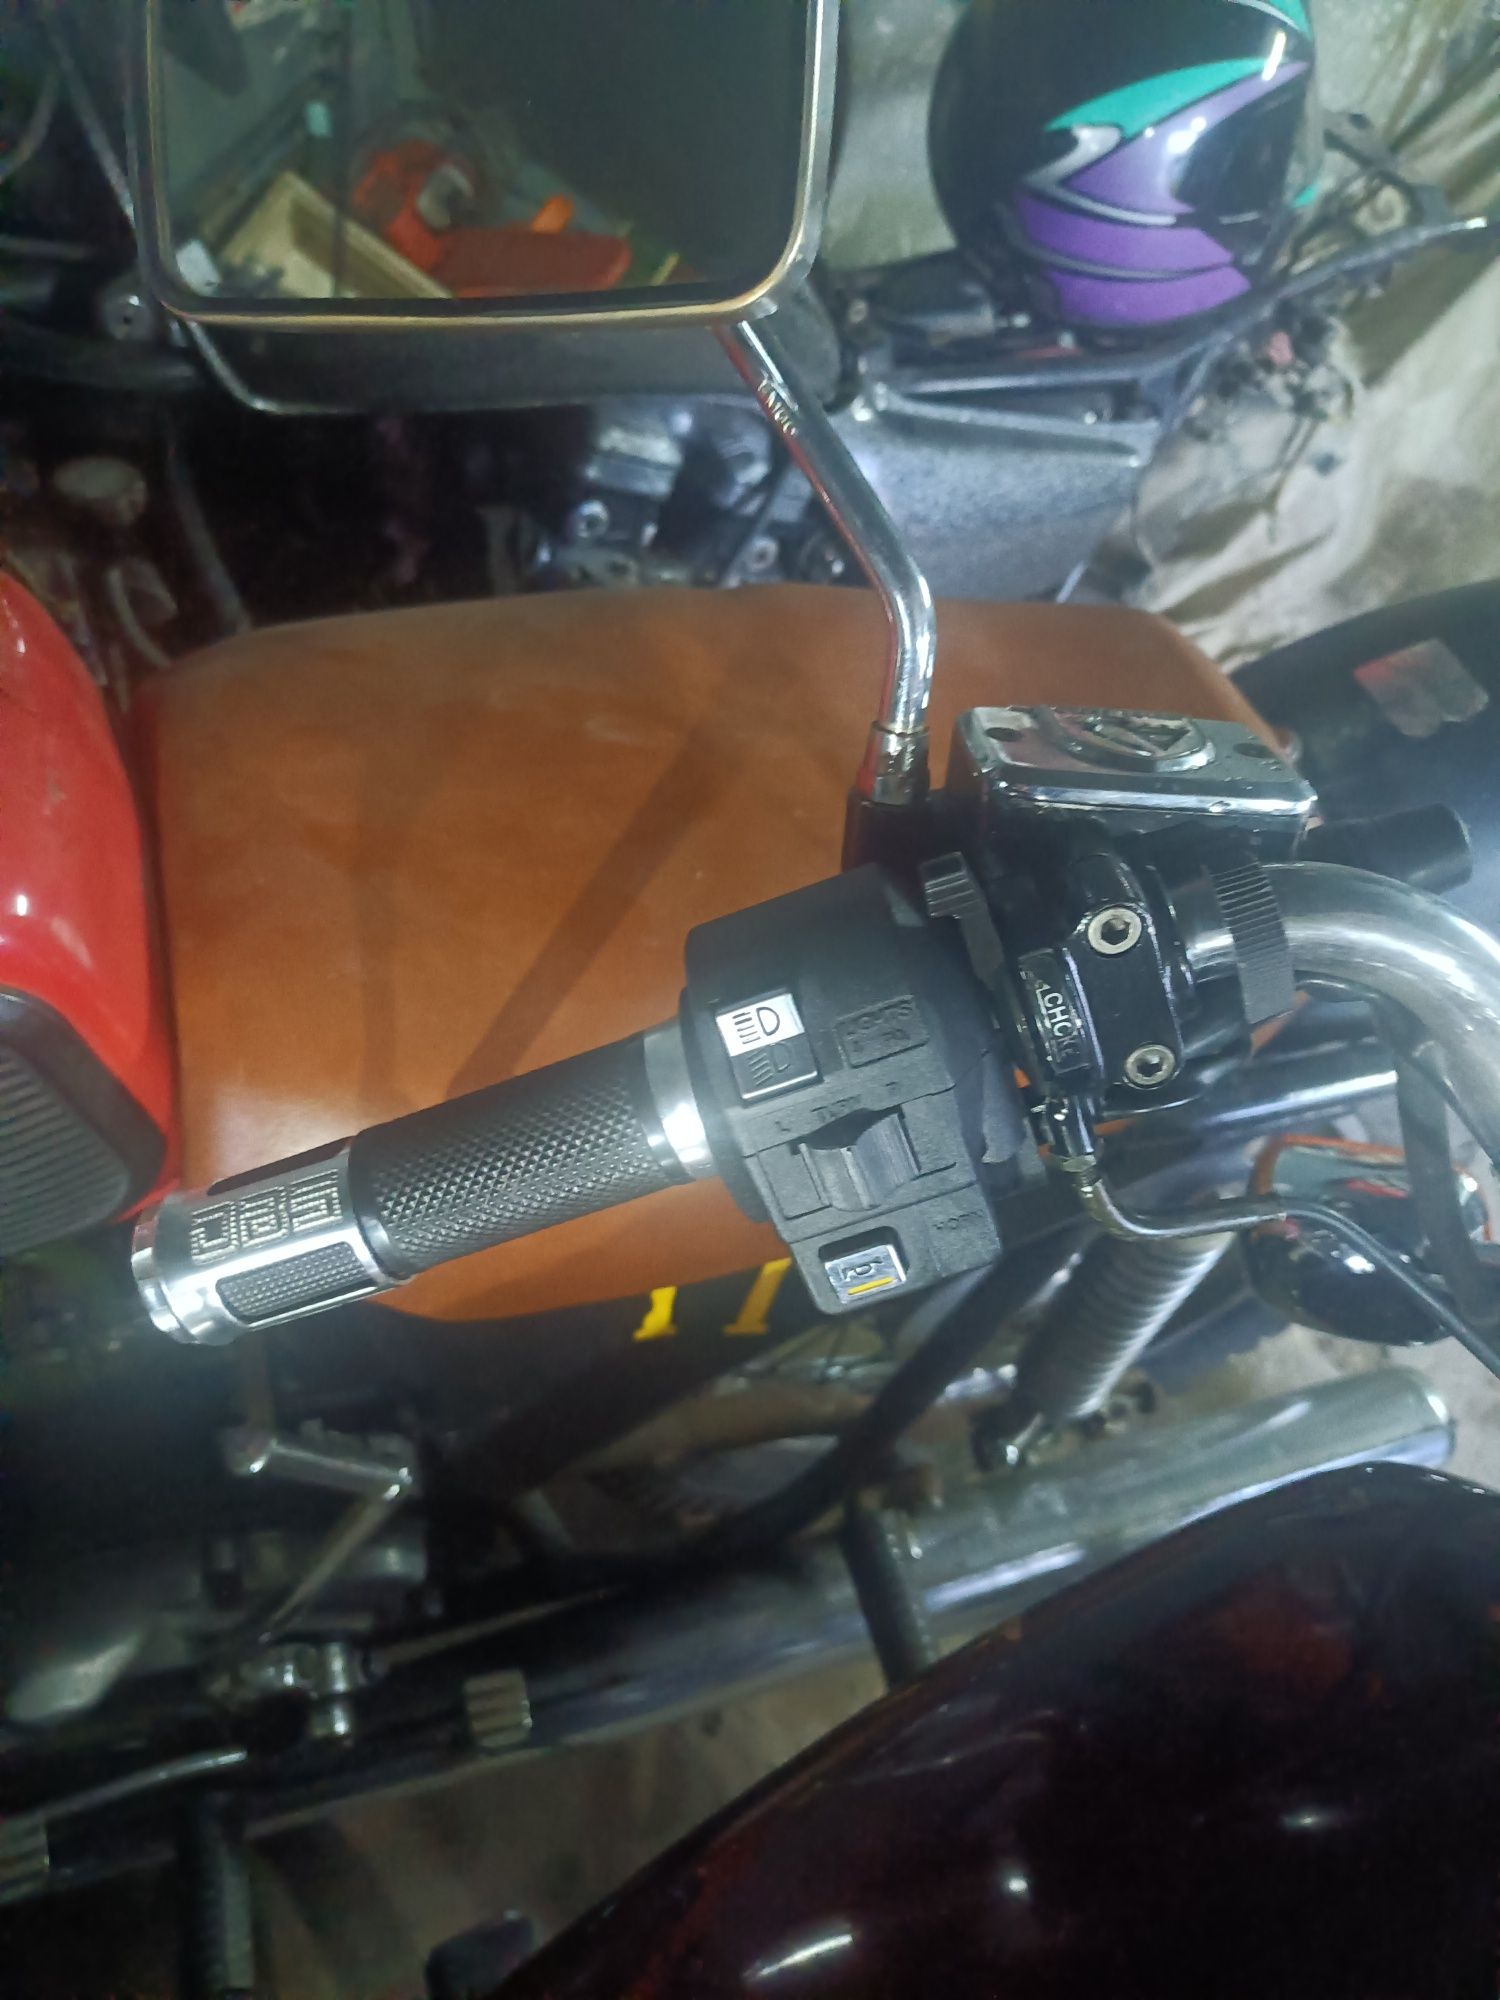 Мотоциклет Honda magna v30